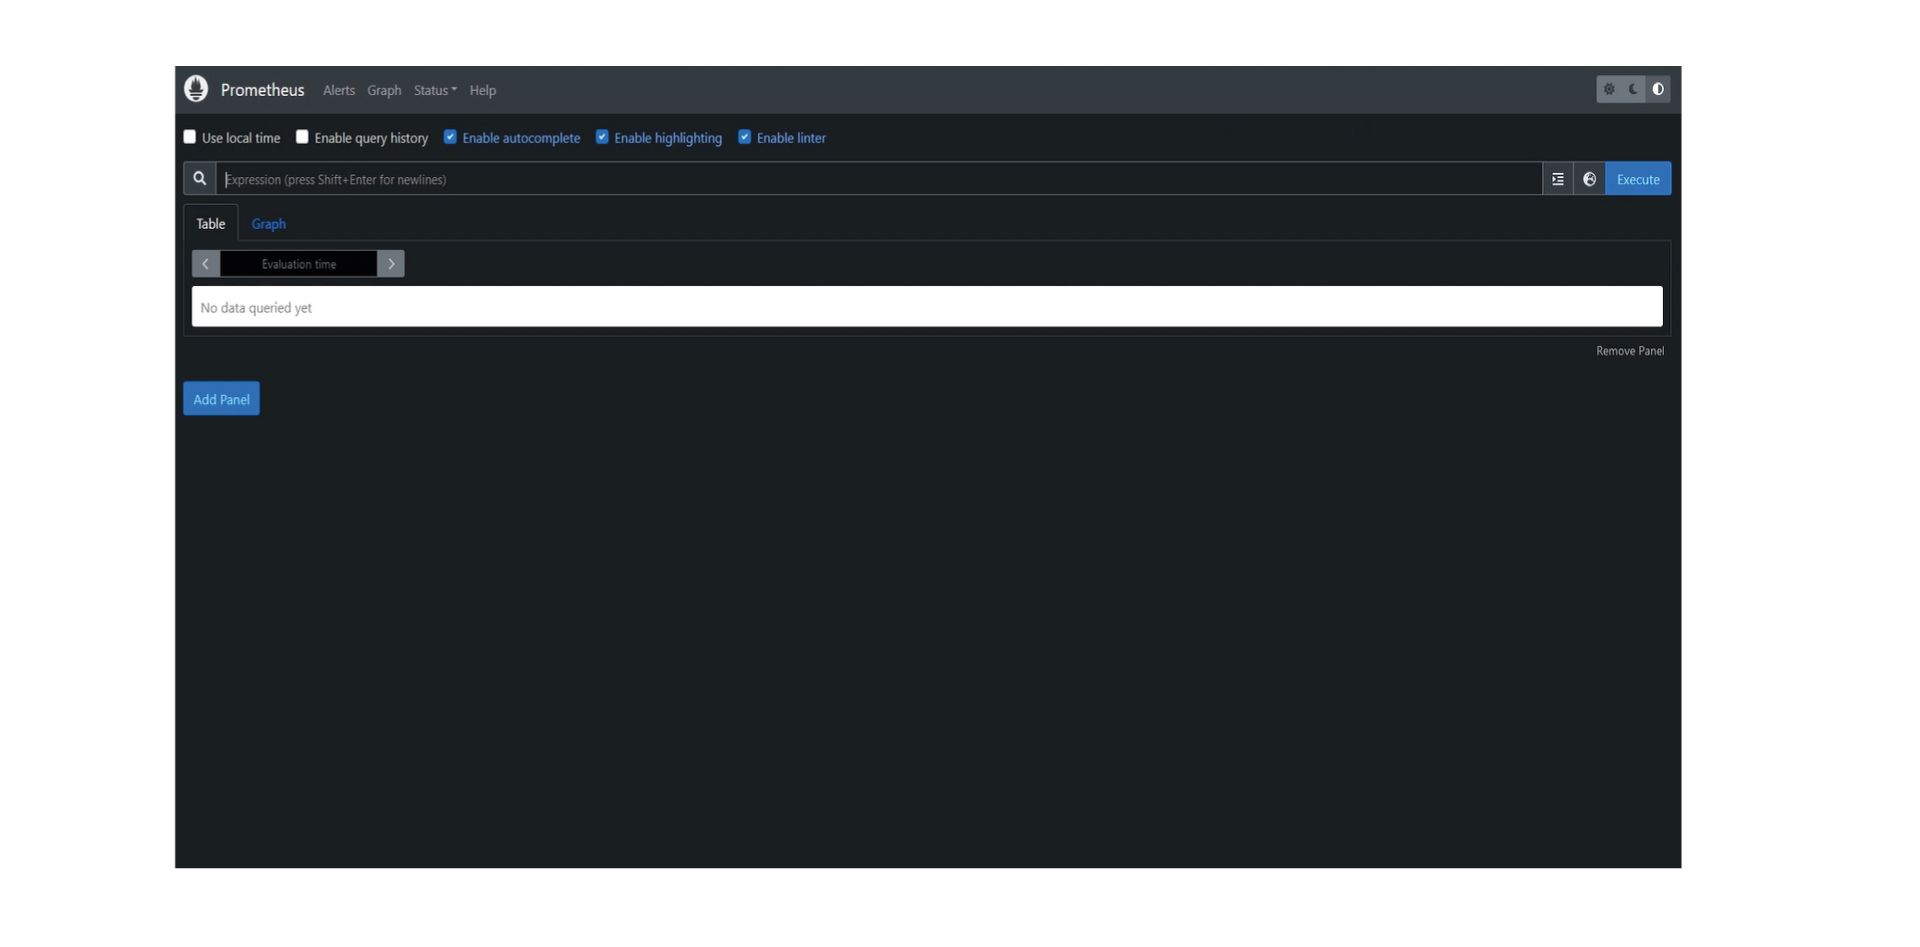 Das Bild ist ein Screenshot der Web-Oberfläche von Prometheus. Es zeigt eine Abfrageleiste mit Optionen wie "Use local time" (Lokale Zeit verwenden), "Enable query history" (Abfrageverlauf aktivieren), "Enable autocomplete" (Autovervollständigung aktivieren), "Enable highlighting" (Hervorhebung aktivieren) und "Enable linter" (Linter aktivieren). Die Oberfläche ist überwiegend dunkel gehalten mit einem Eingabefeld für Abfragen mit der Beschriftung "Expression (press Shift+Enter for newlines)" (Ausdruck (für neue Zeilen Shift+Enter drücken)) und Schaltflächen für "Table" (Tabelle) und "Graph" (Grafik) Ansichten. Es gibt eine Meldung "No data queried yet" (Noch keine Daten abgefragt) und einen Button "Add Panel" (Panel hinzufügen). Die obere Navigationsleiste beinhaltet Tabs für "Alerts" (Alarme), "Graph" (Grafik), "Status" und "Help" (Hilfe). Das gesamte Layout ist sauber und zweckmäßig, konzipiert für die Eingabe und Auswertung von Datenabfragen in Prometheus.